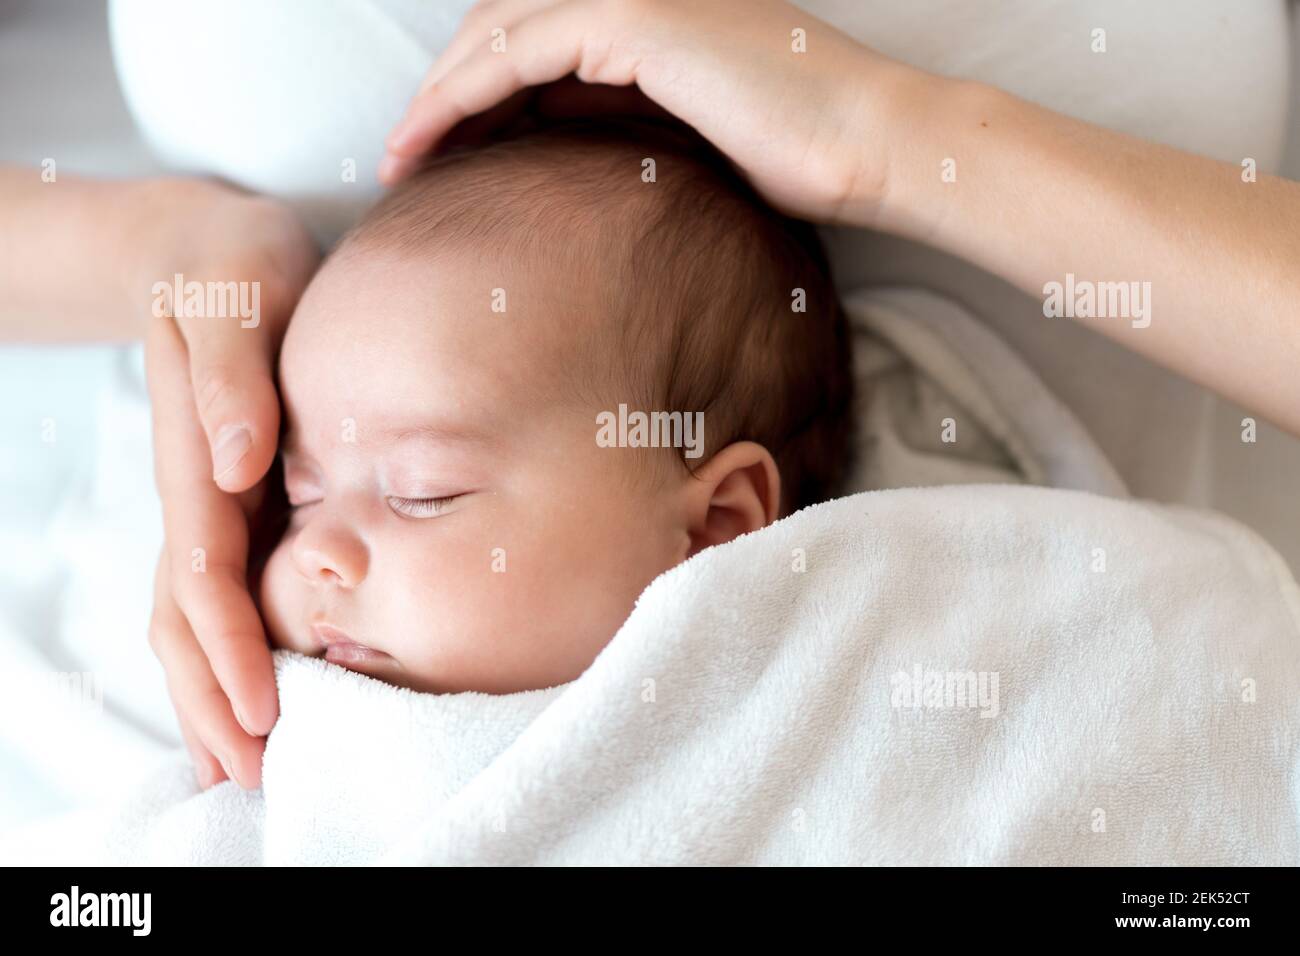 Nahaufnahme Porträt von Mutter mit neugeborenem Baby auf weißem Hintergrund Kopie Raum. Junge nette kaukasische Frau schwarz behaart halten Kind in den Armen Mutterschaft Stockfoto